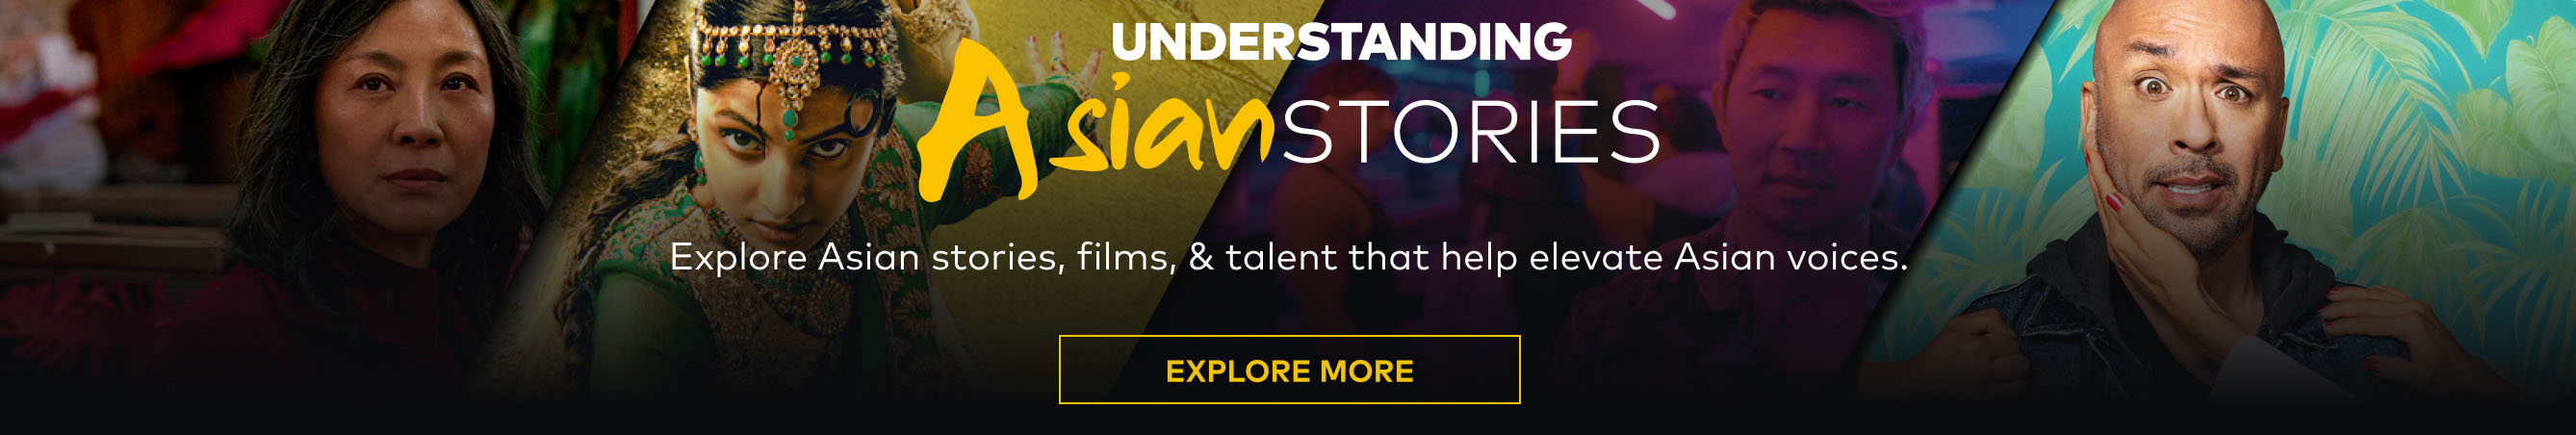 Understanding Asian Stories